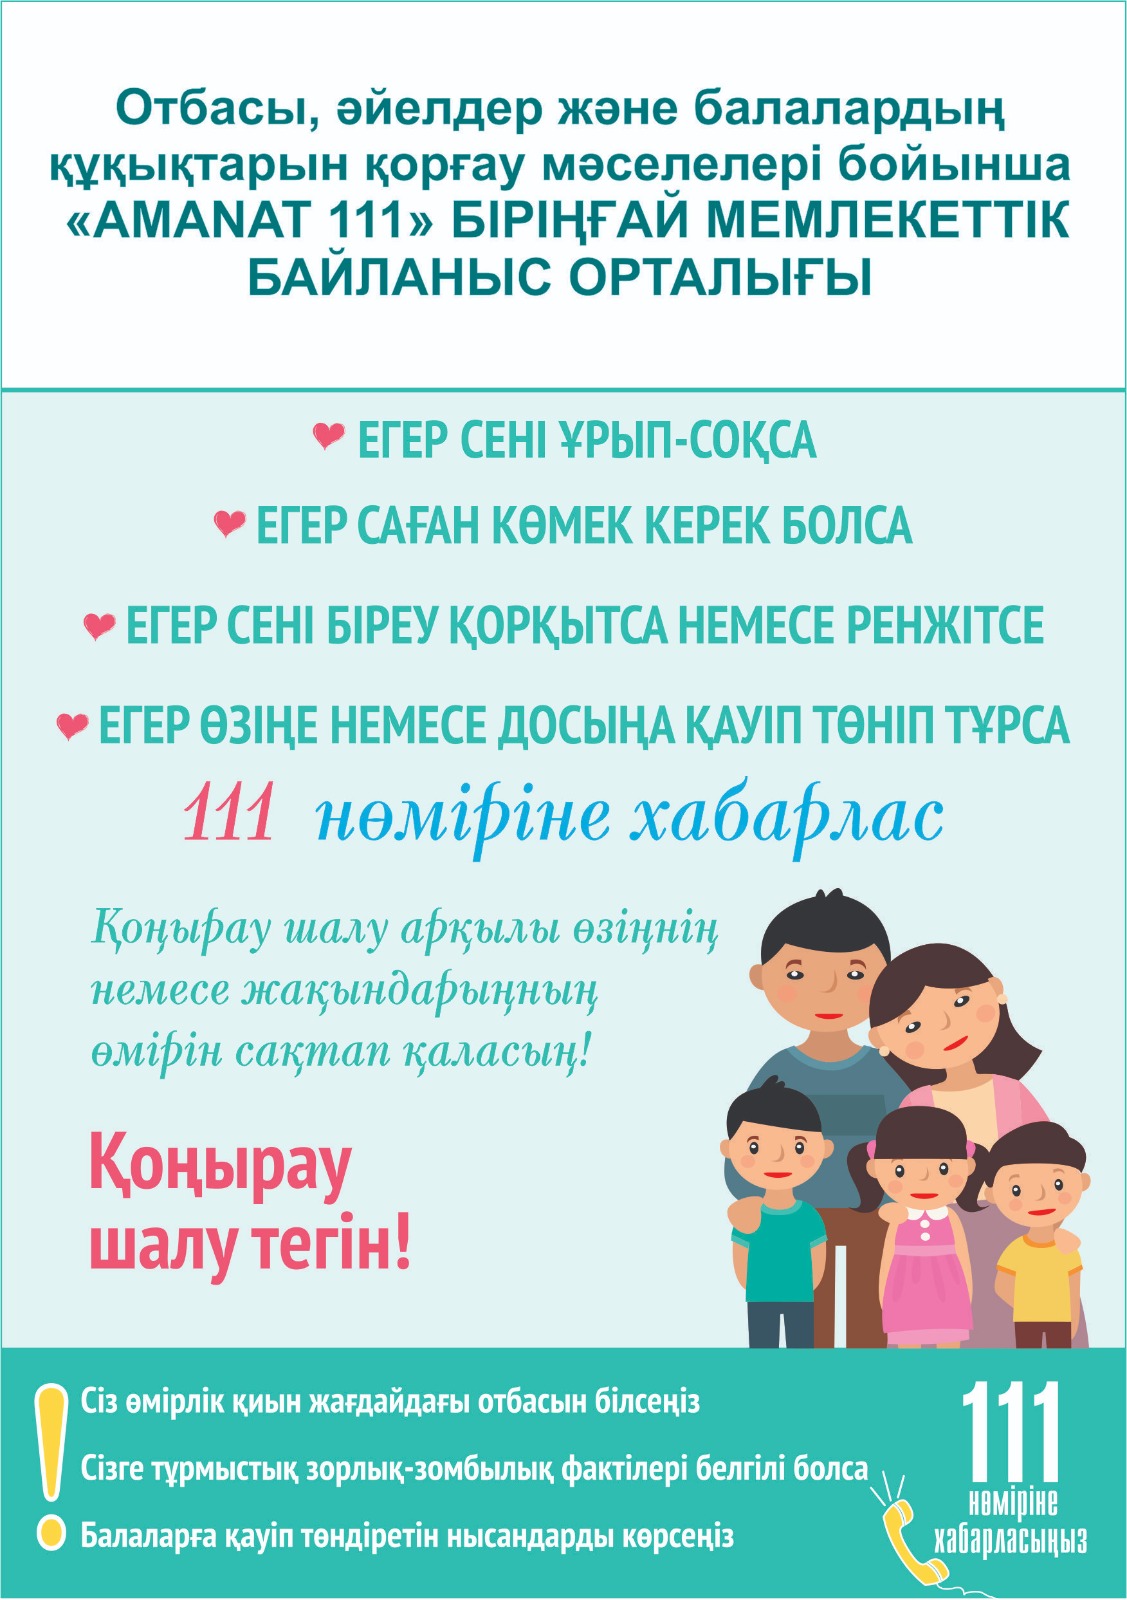 Единый государственный контакт-центр по вопросам семьи, женщин и защиты прав детей